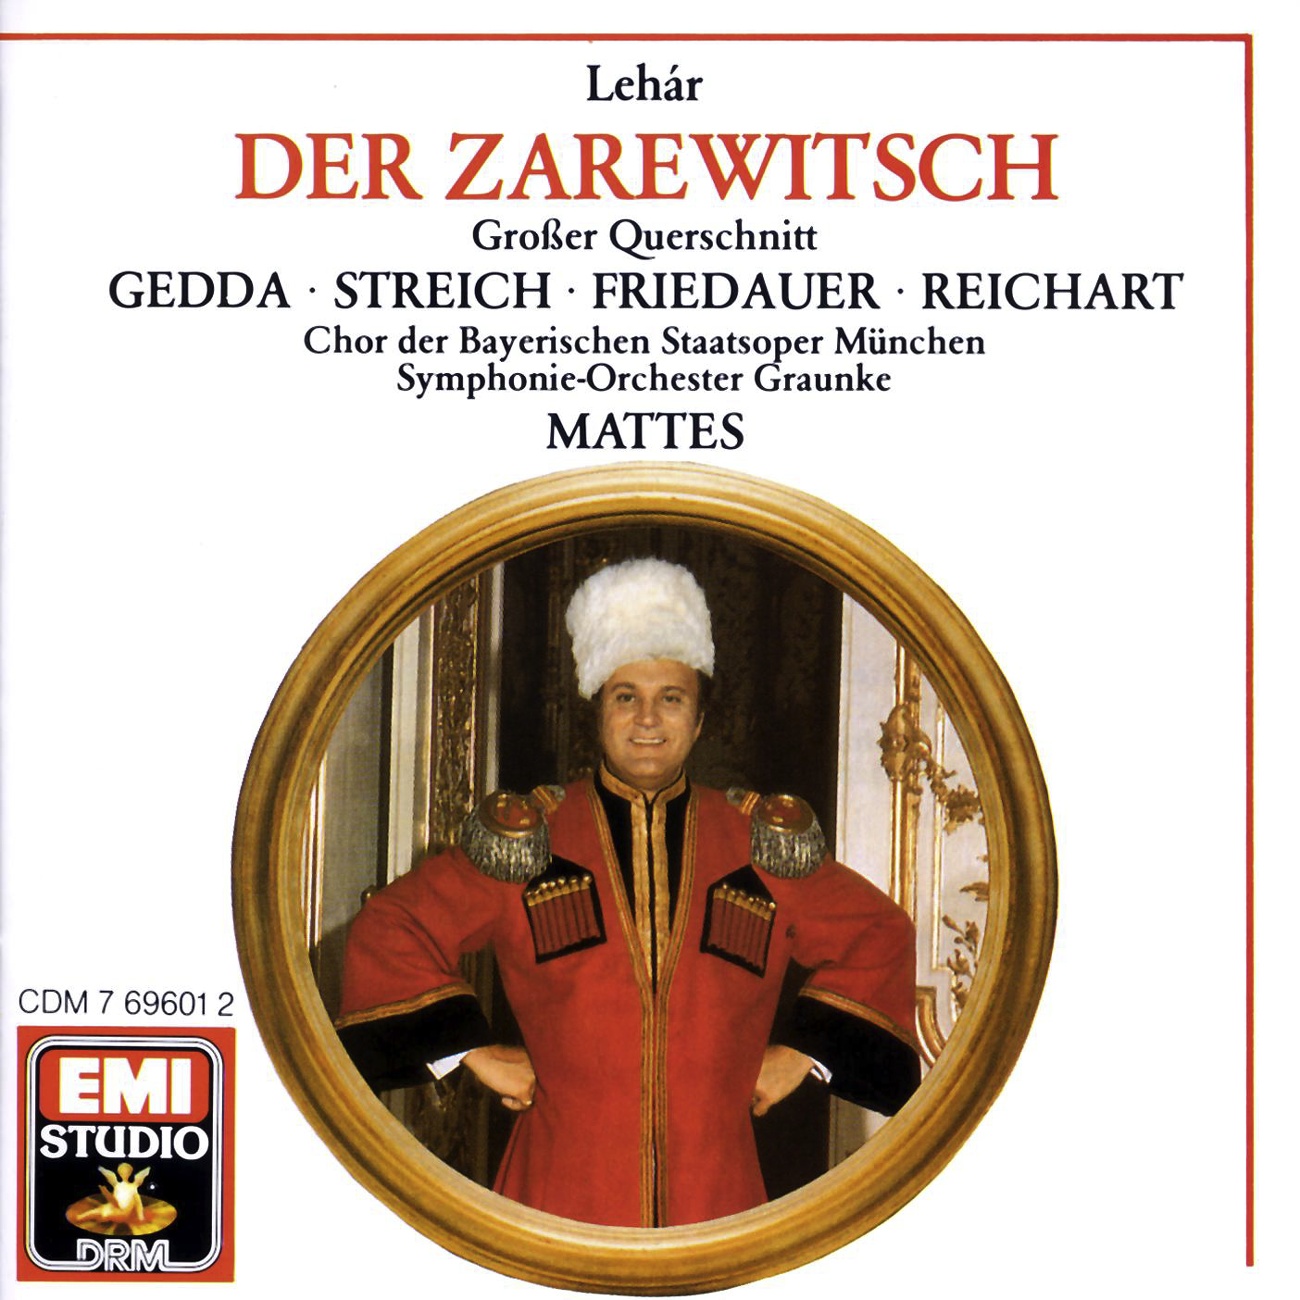 Der Zarewitsch  Highlights 1988 Digital Remaster, Zweiter Akt: Heute hab' ich meinen sch nsten Tag  O komm, es hat der Frü hl